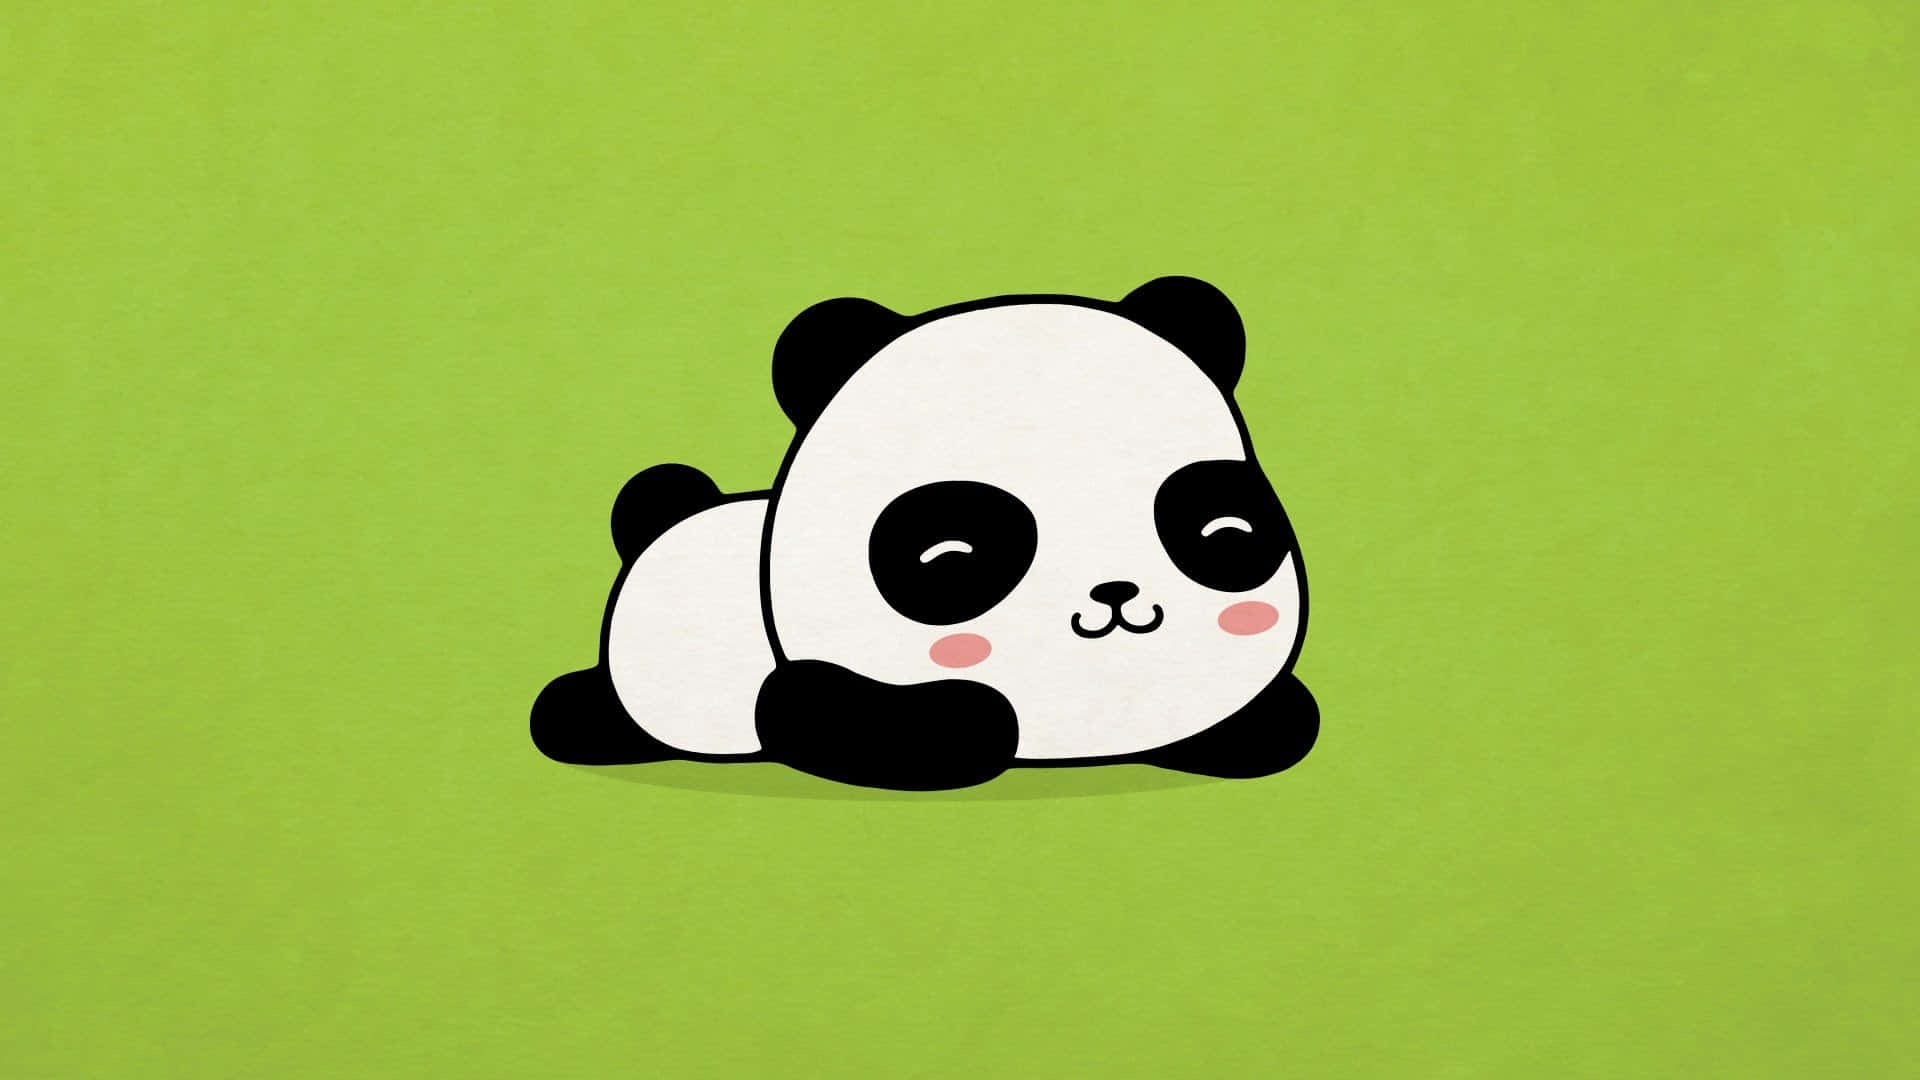 Green Cute Cartoon Panda Wallpaper